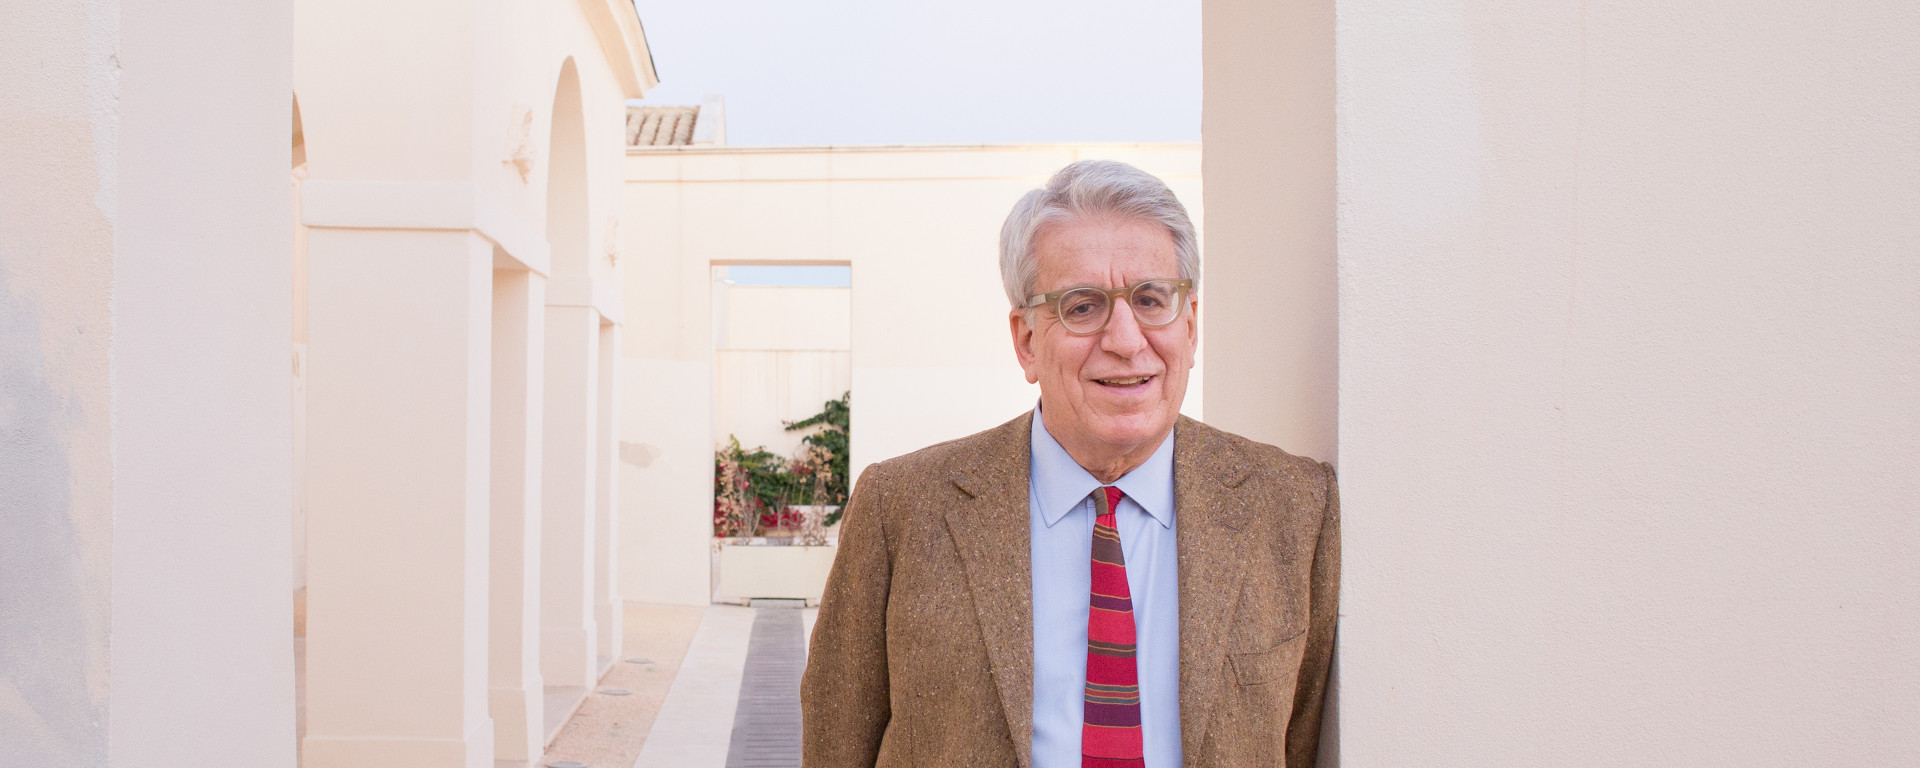 Luigi Manconi, 8 novembre 2015, Biblioteca Provinciale, Cagliari.